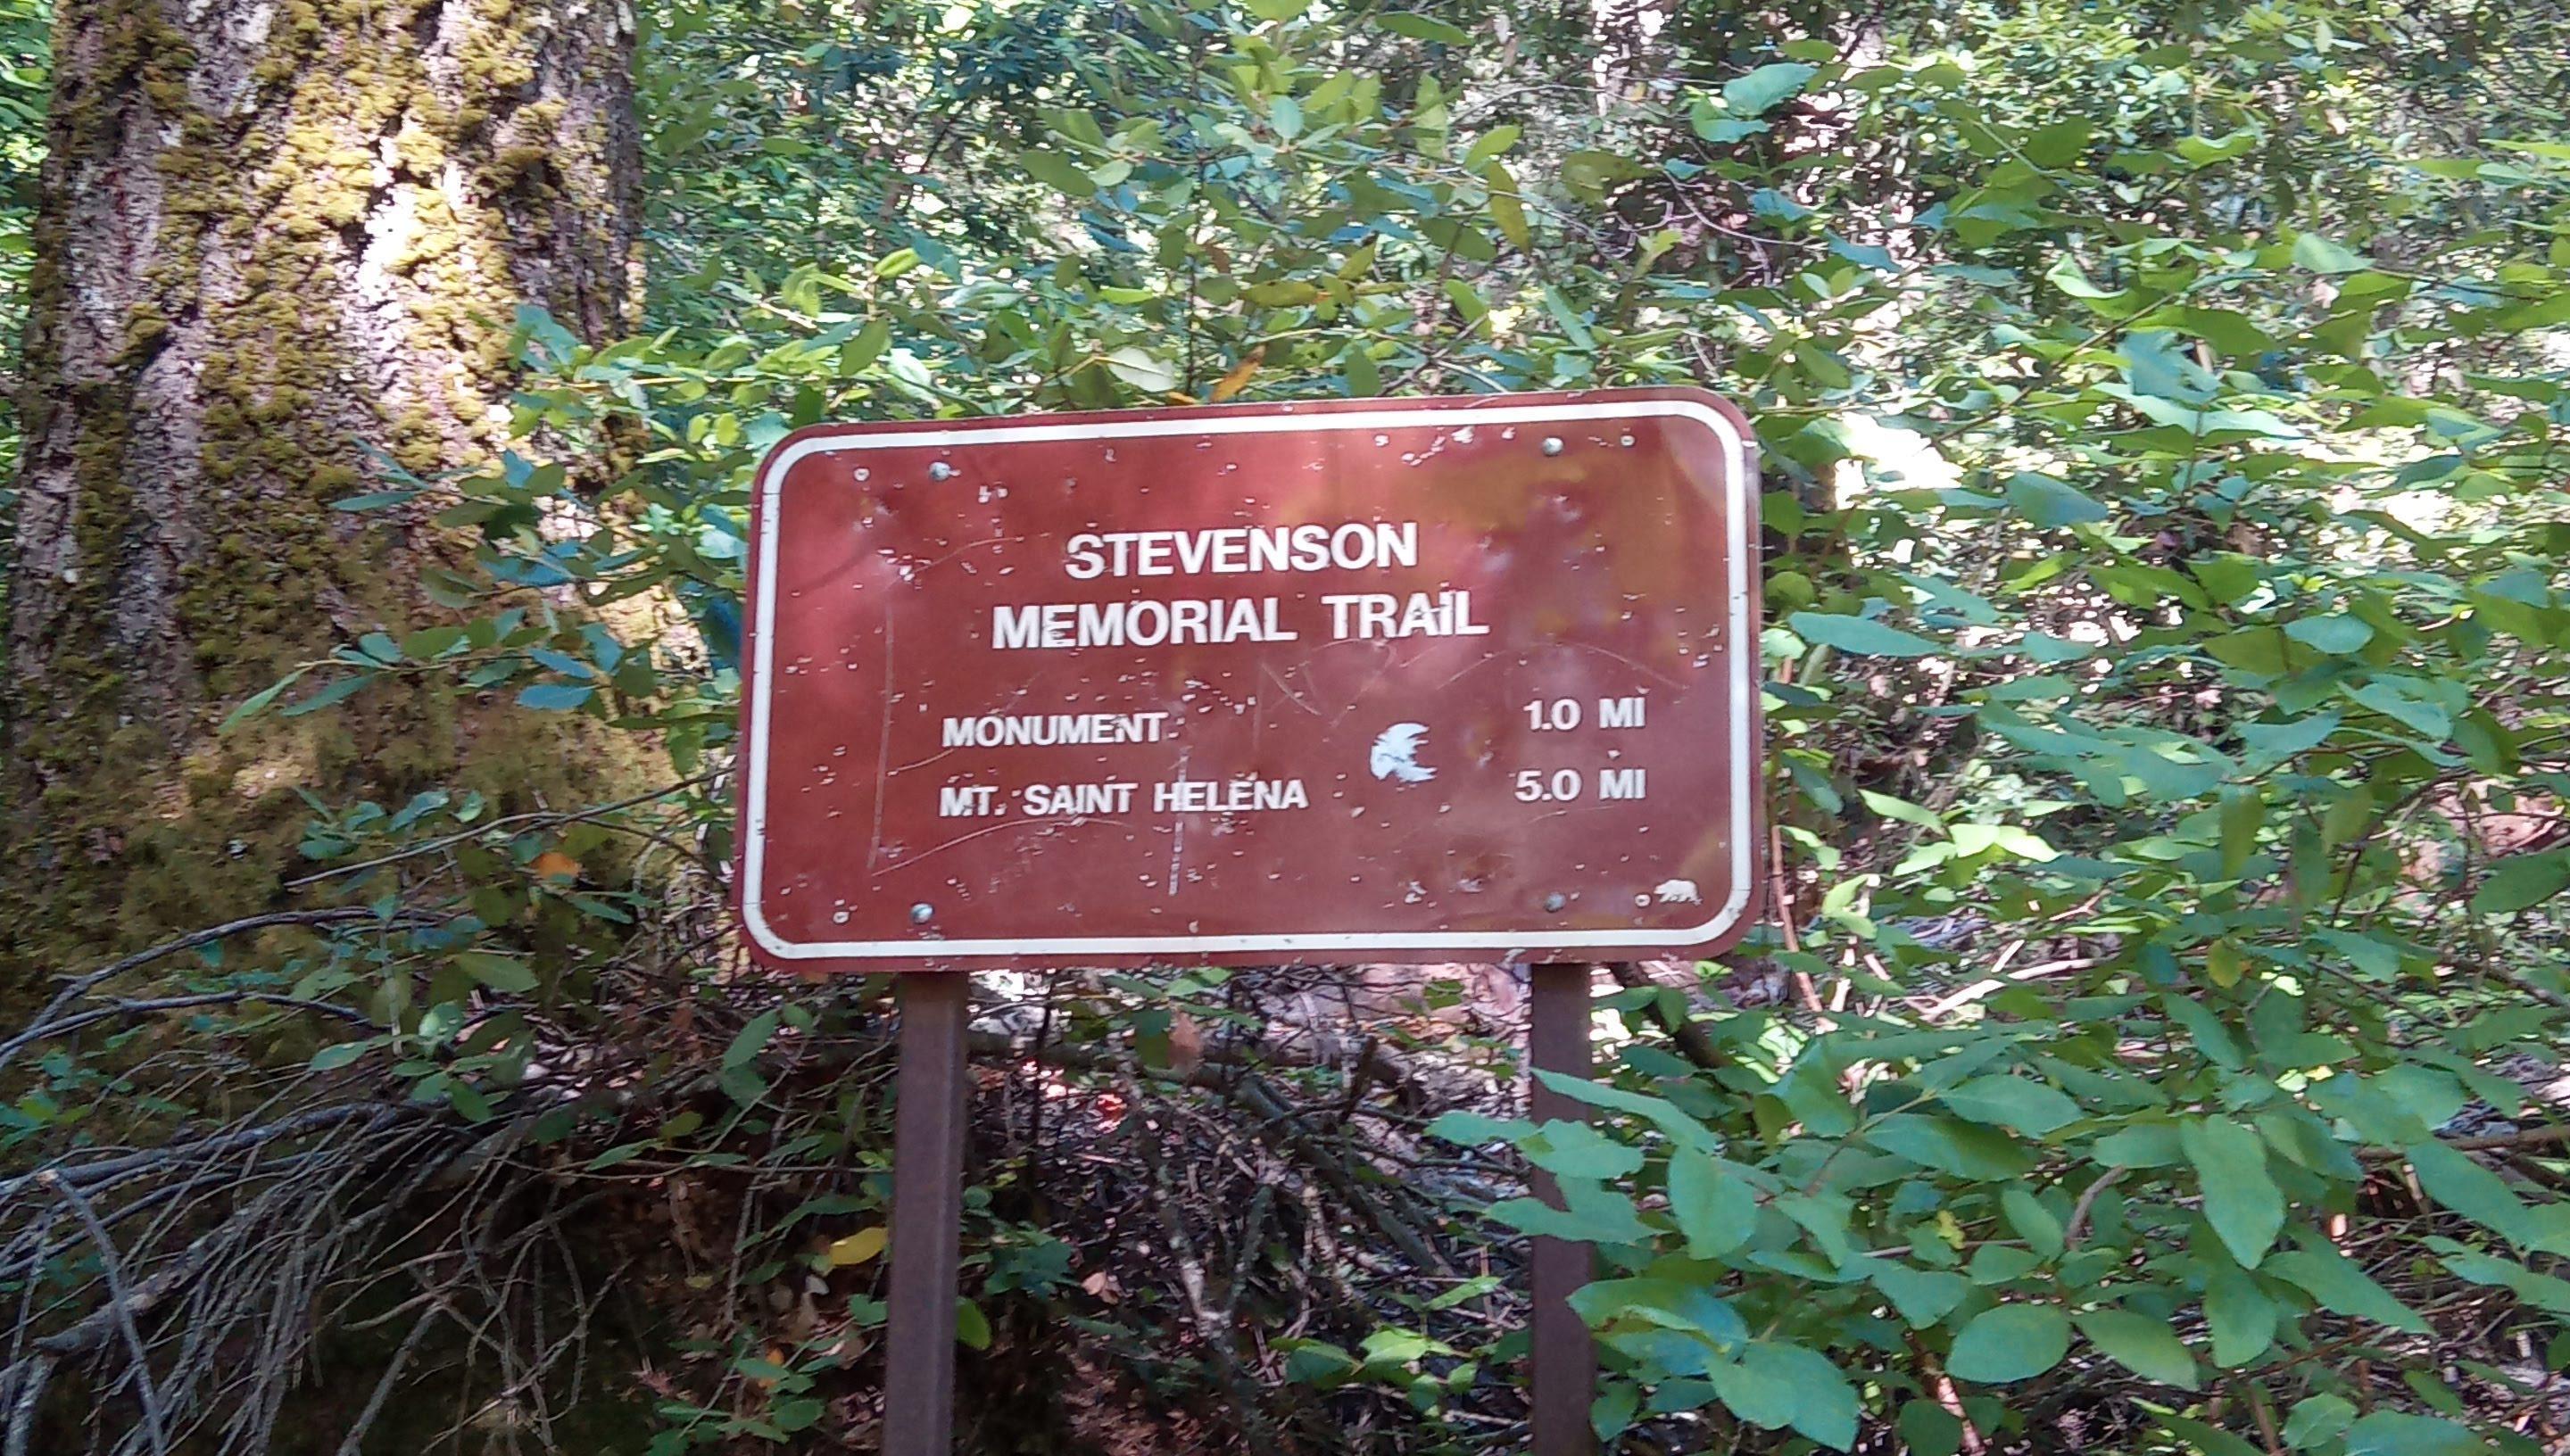 Stevenson memorial trail sign